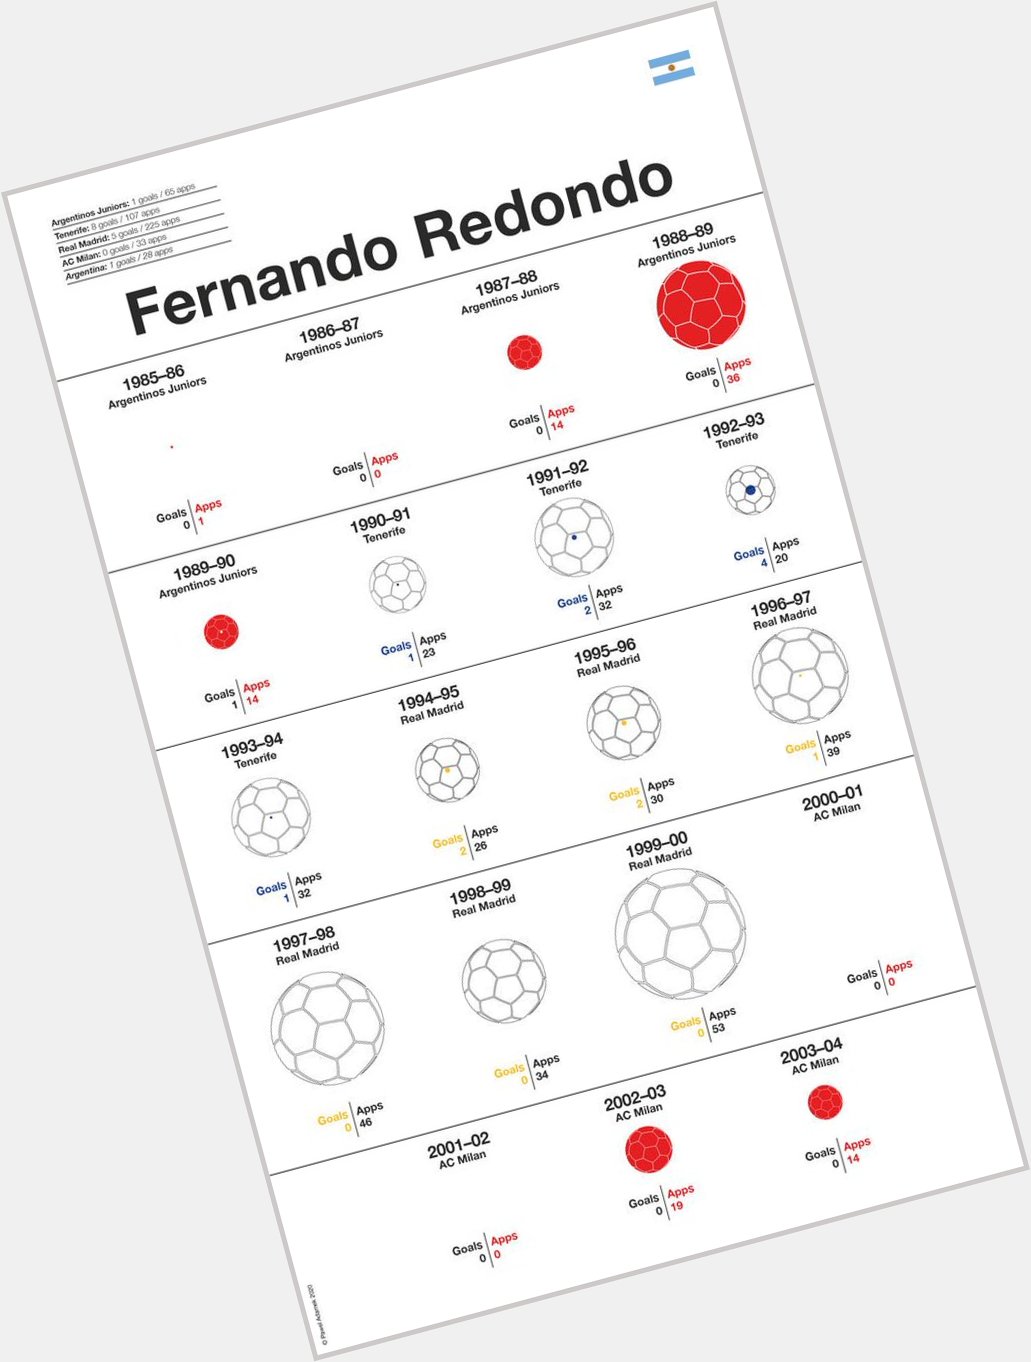 Happy Birthday Fernando Redondo!          